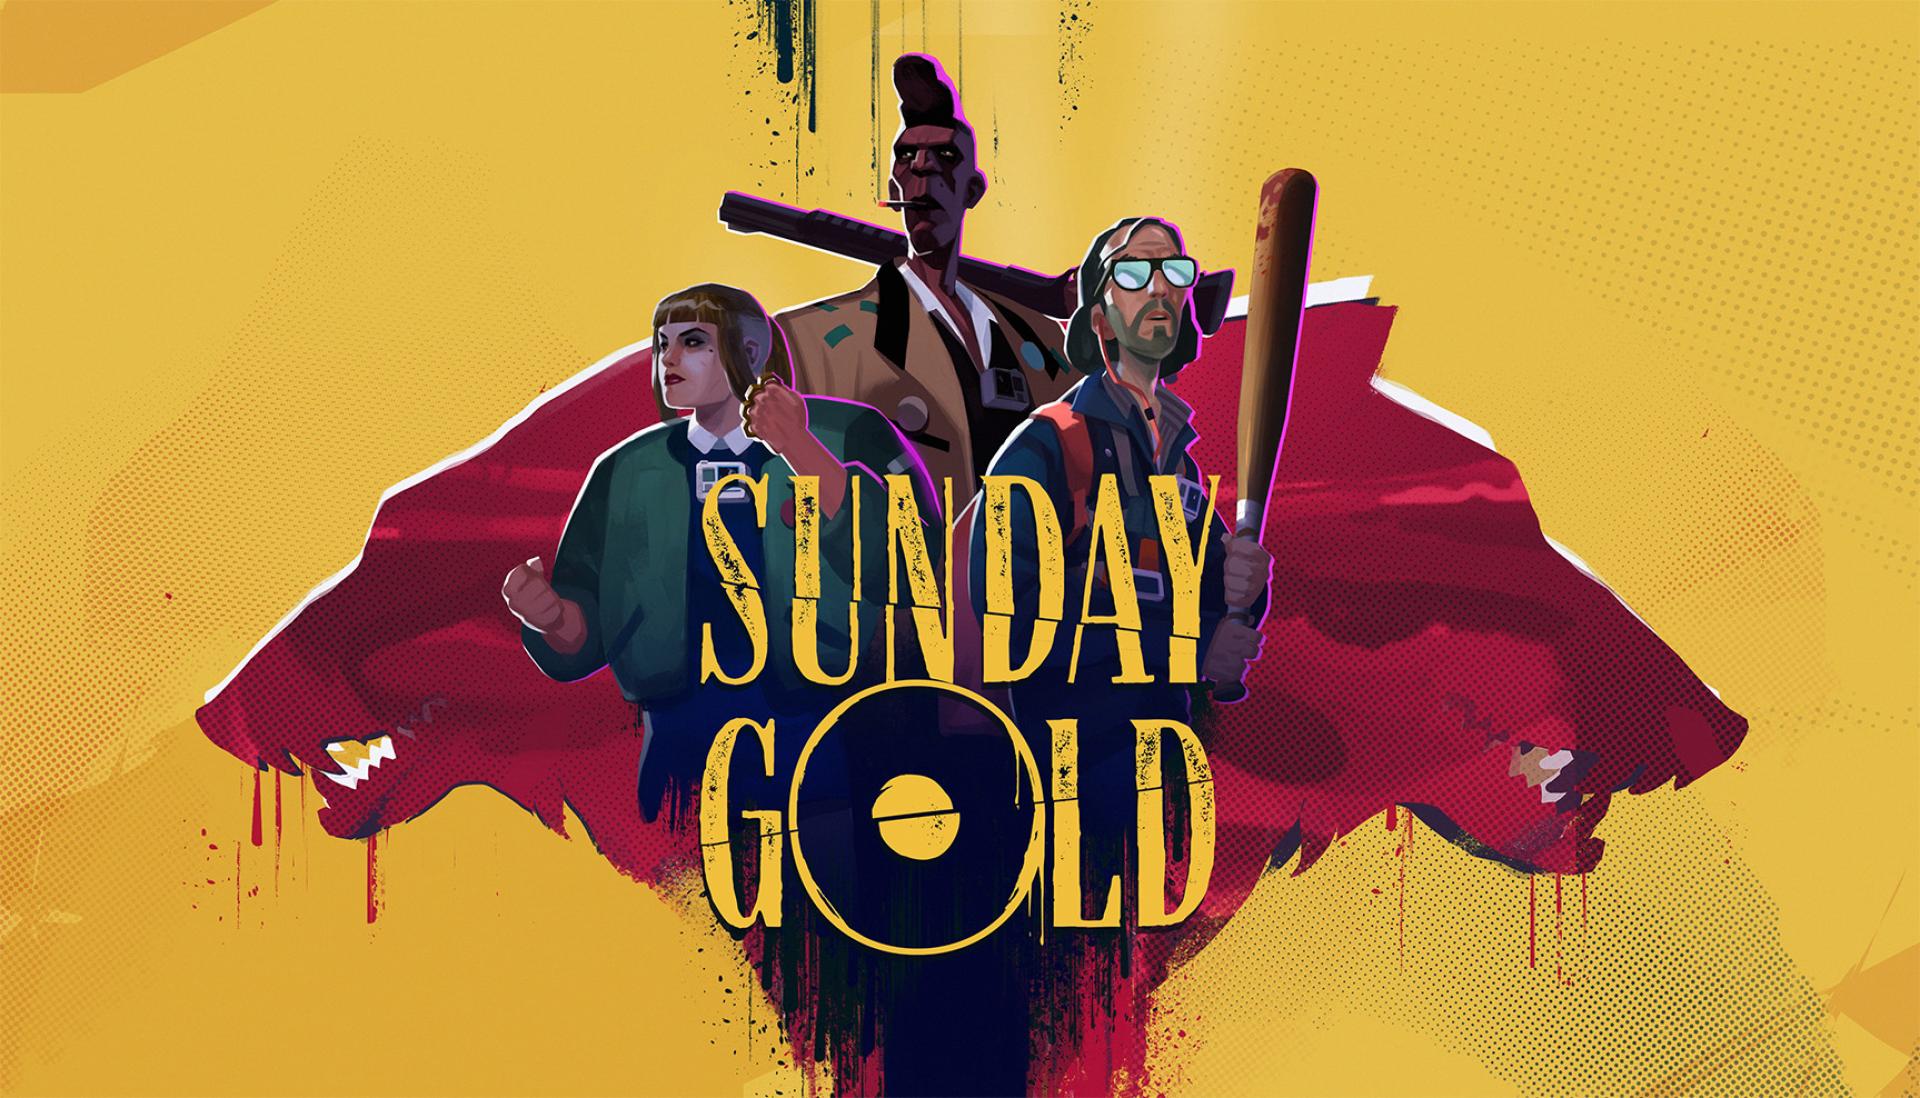 NYX Game Awards - Sunday Gold